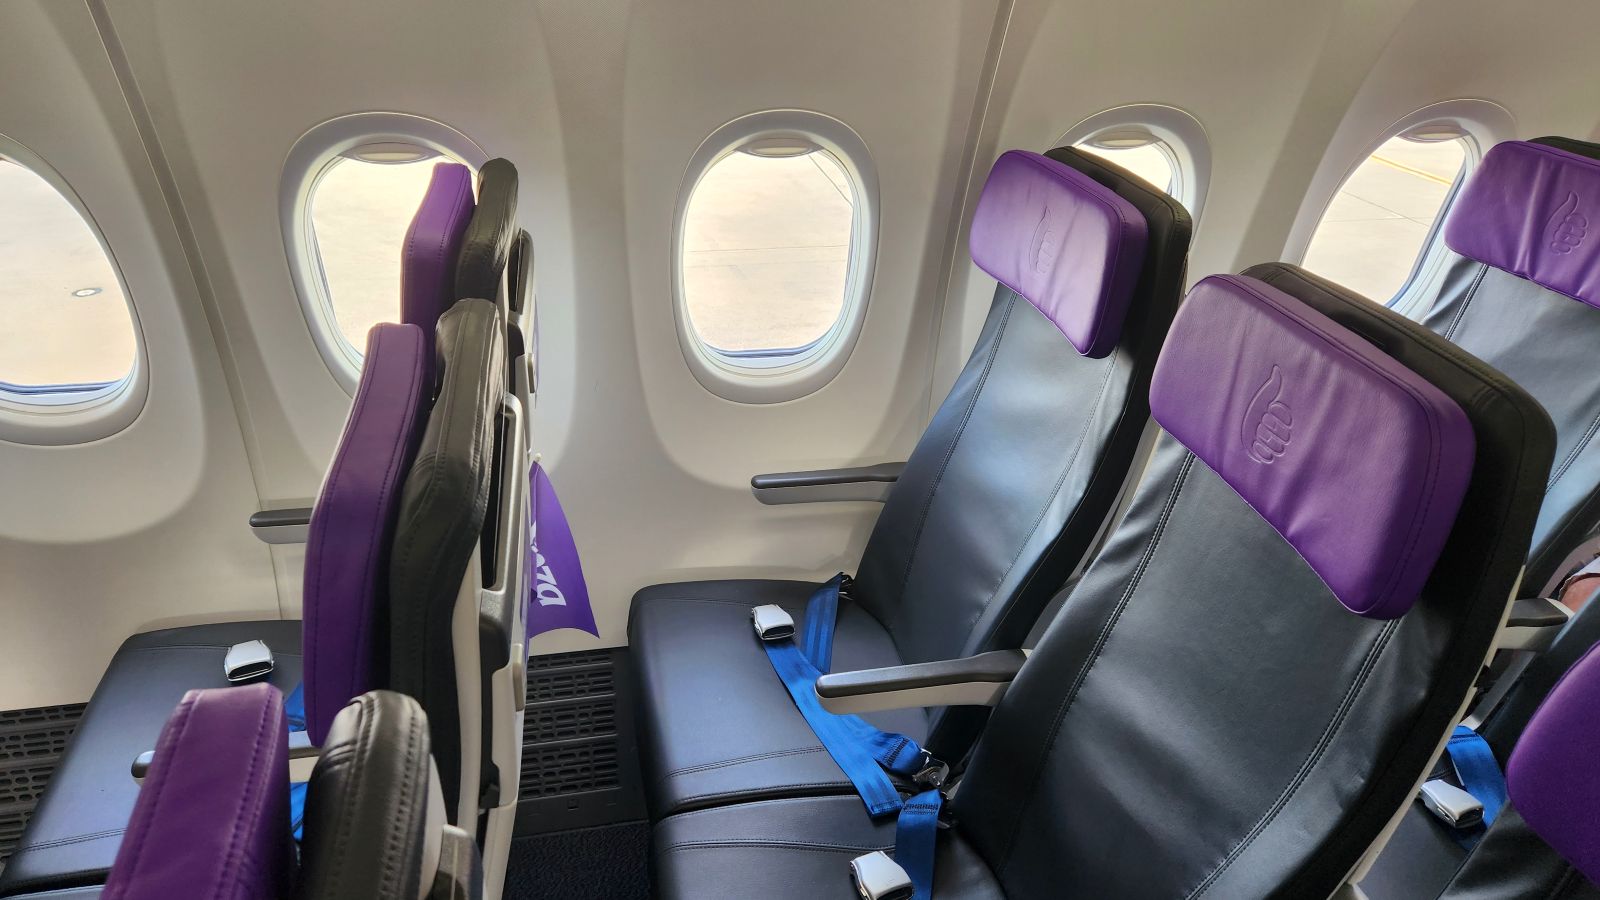 Seats on Bonza flight